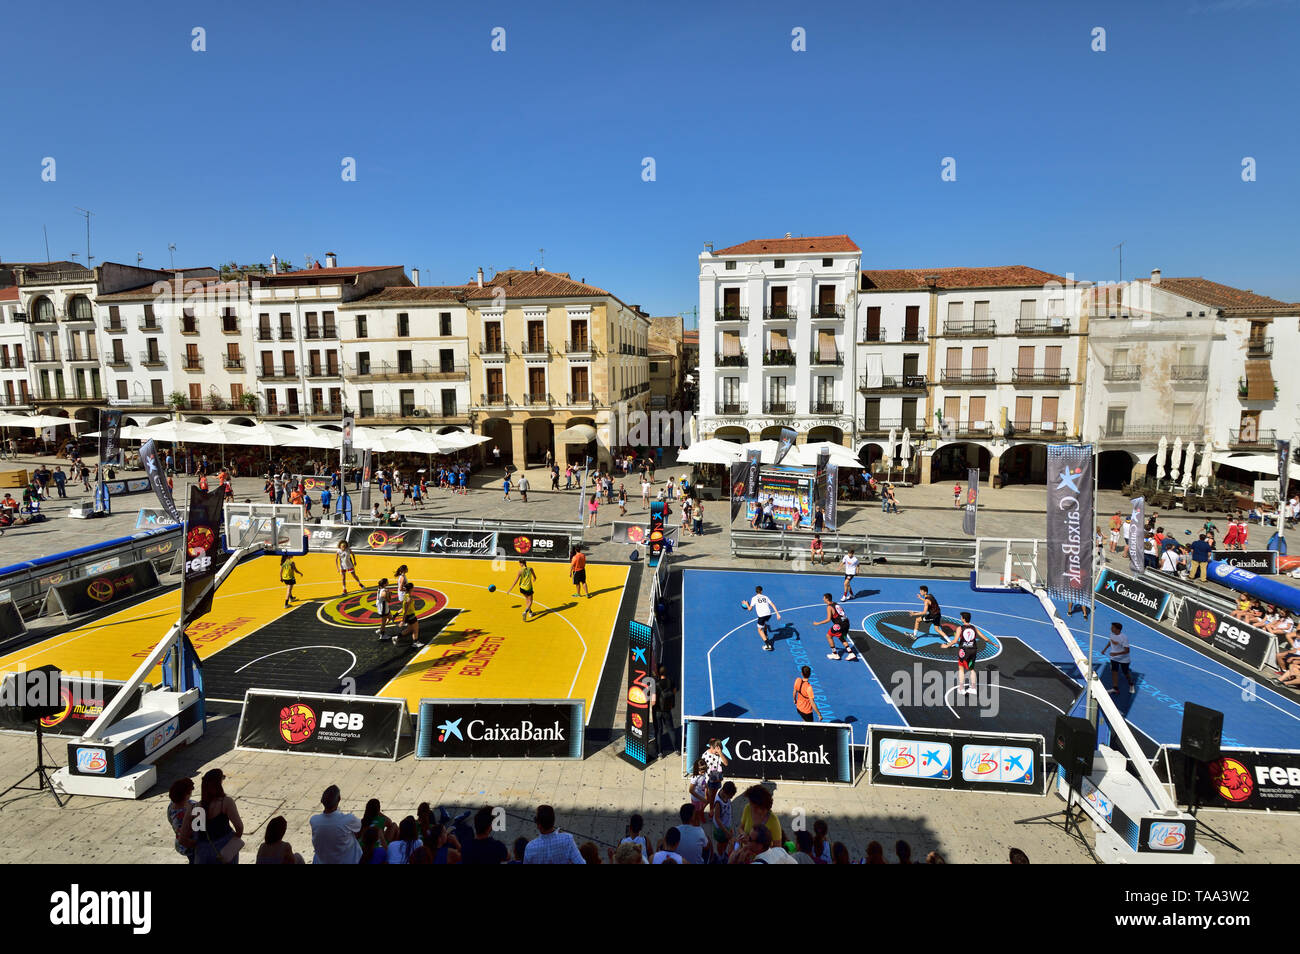 La Plaza Mayor di sabato. Un posto per il divertimento e lo sport, stile spagnolo. Caceres, Spagna Foto Stock